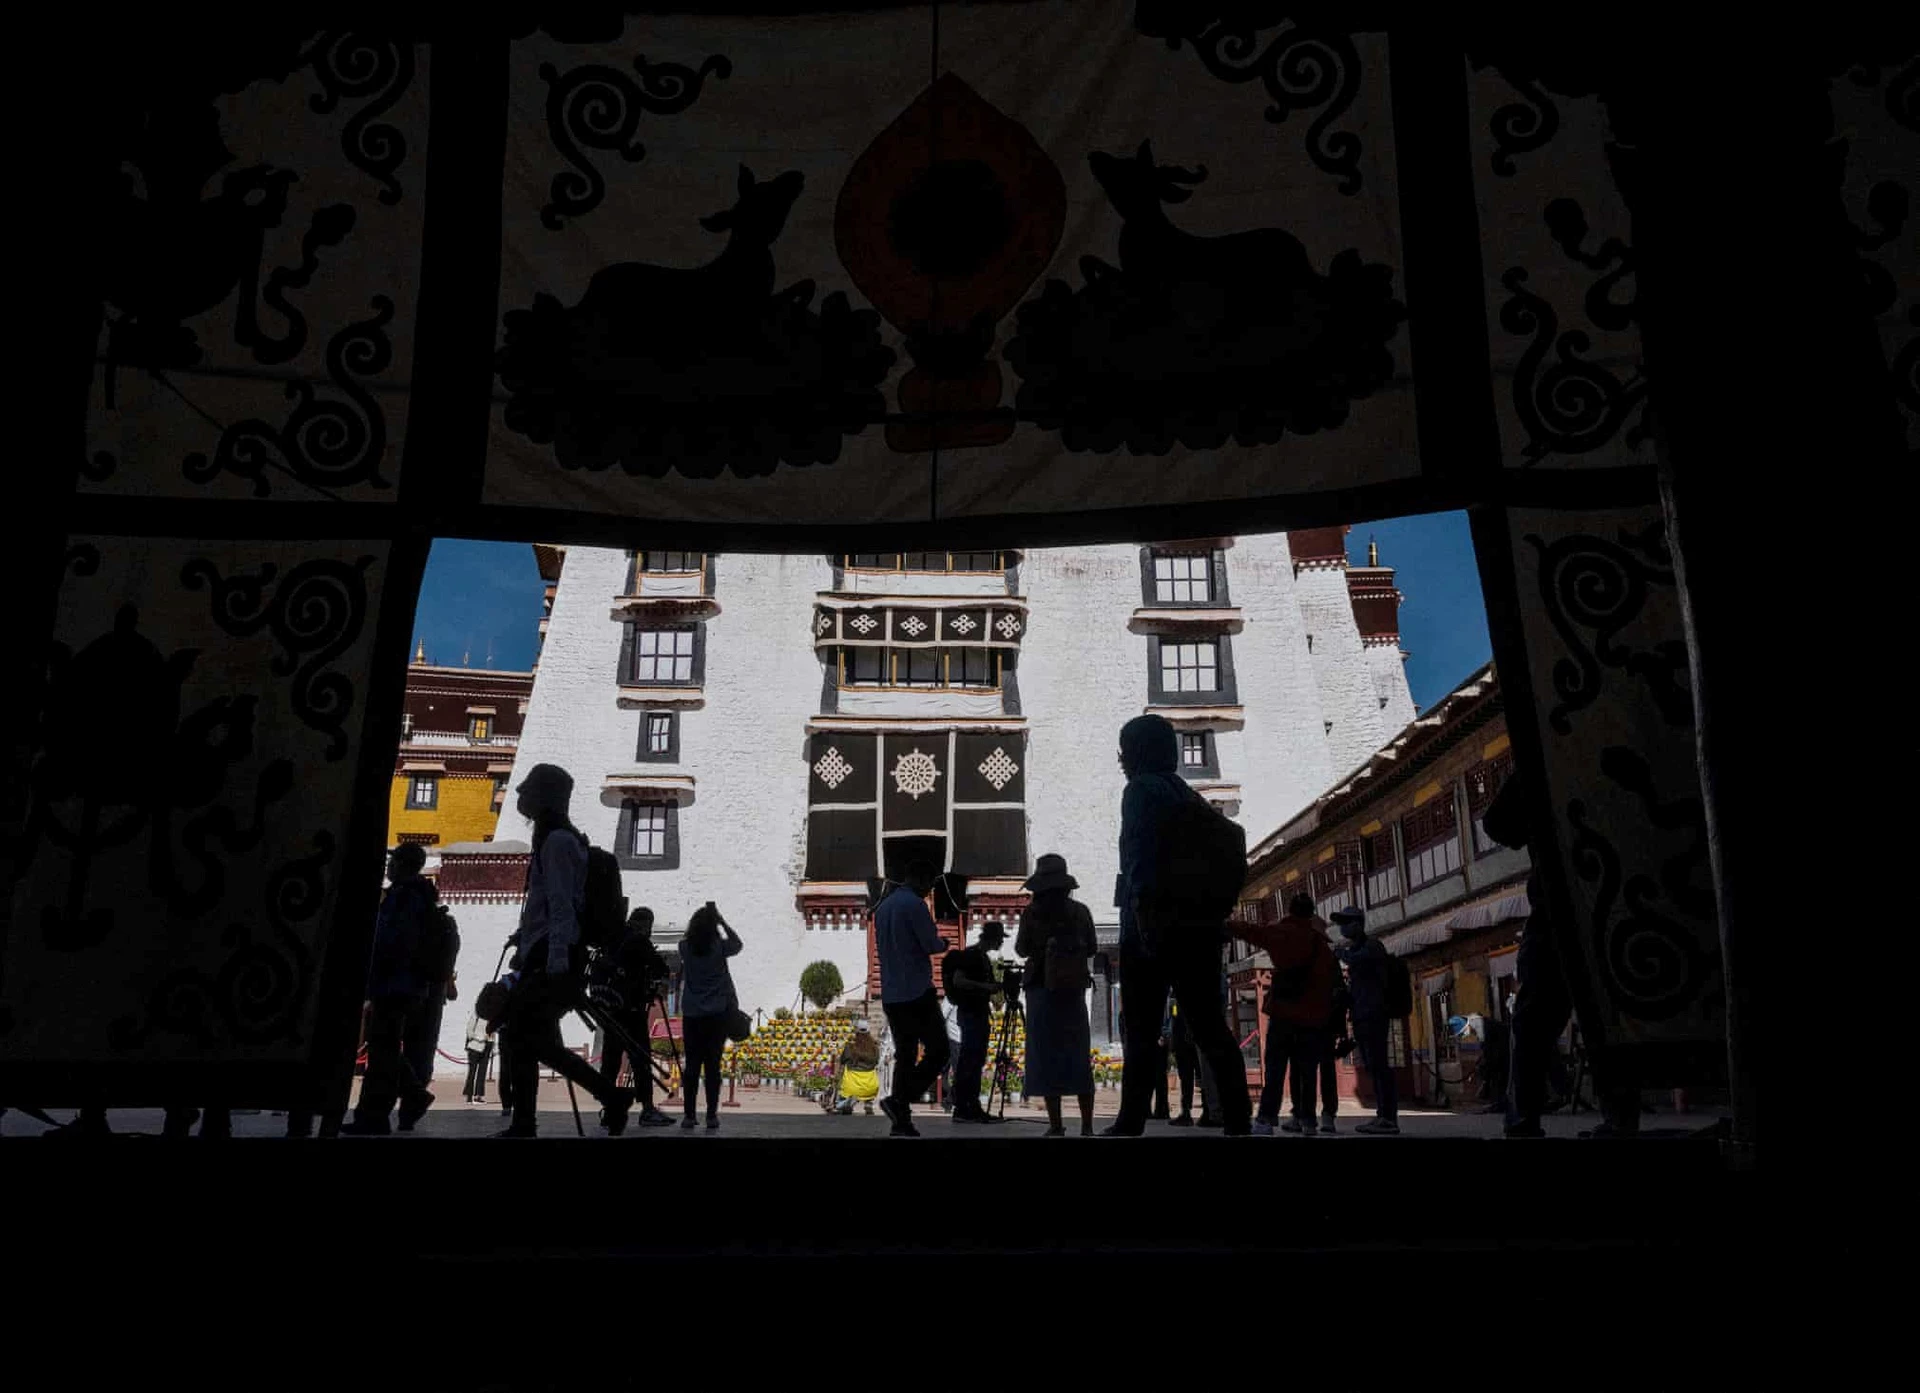 Du khách viếng thăm điện Potala - Di sản Thế giới được UNESCO công nhận. Gần đây, Trung Quốc đã nới lỏng lệnh cấm du khách nước ngoài tới Tây Tạng vì dịch Covid-19. Đây được xem là cách đất nước này thúc đẩy du lịch Tây Tạng. Các nhà báo nước ngoài vốn không được phép tới khu tự trị. Tuy nhiên, chính quyền đã tổ chức một chuyến tham quan riêng cho nhóm này do chính họ tổ chức.